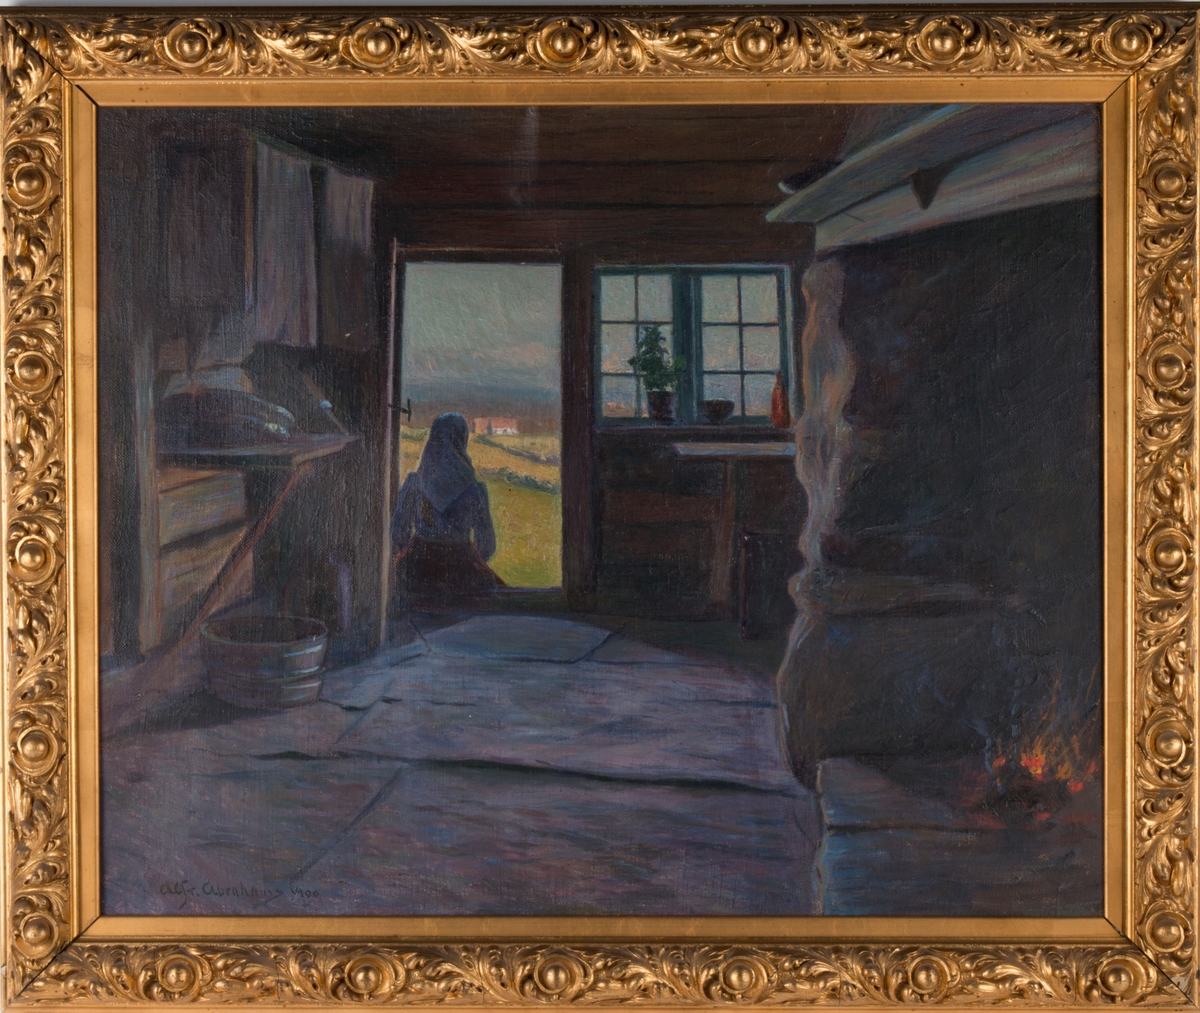 Interiørscene av kvinne som sitter i en døråpning og landskap utenfor